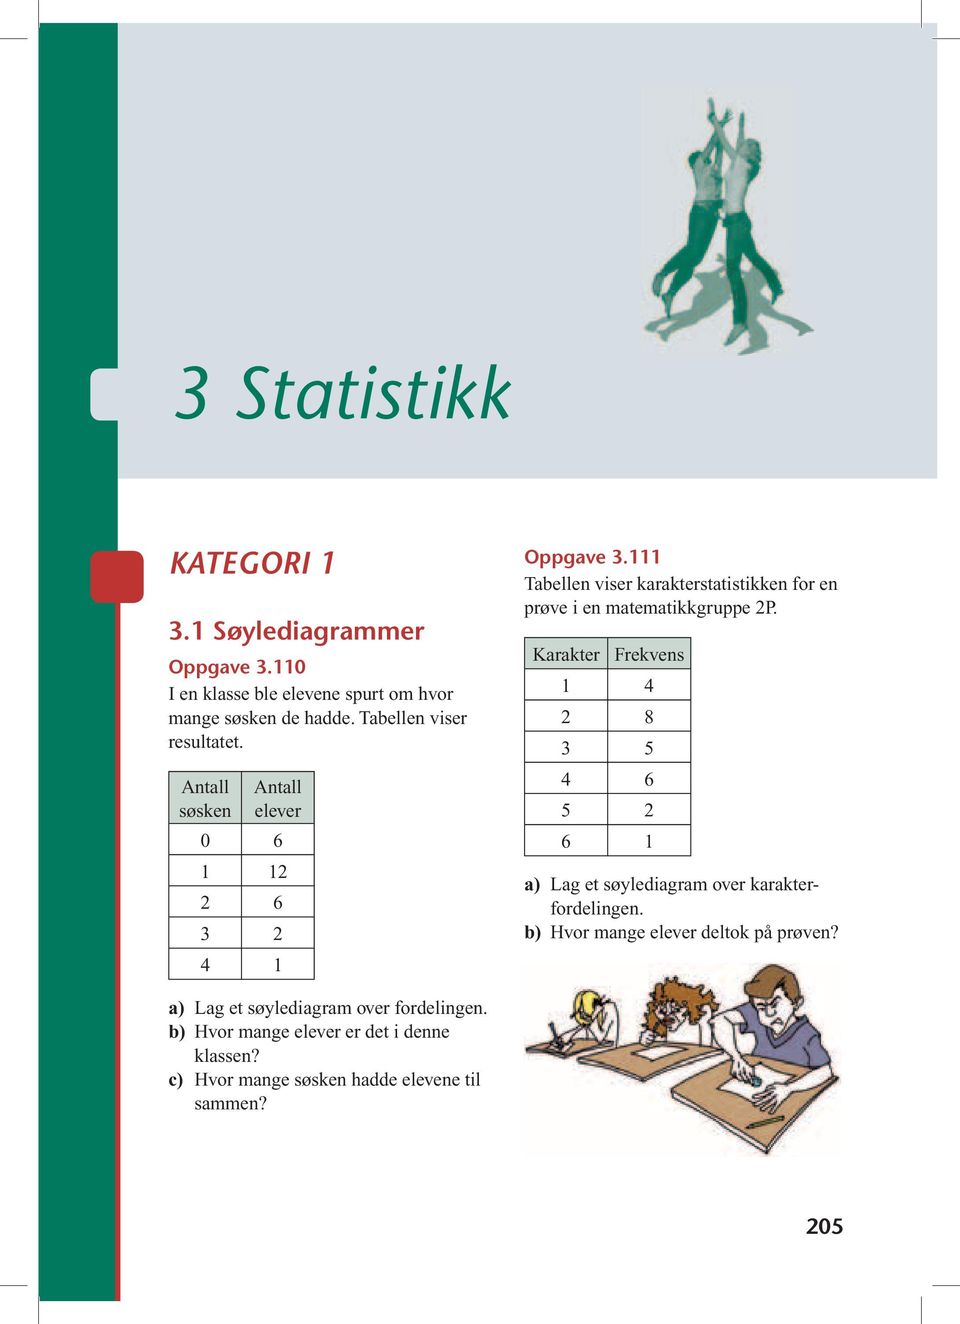 111 Tabellen viser karakterstatistikken for en prøve i en matematikkgruppe 2P.